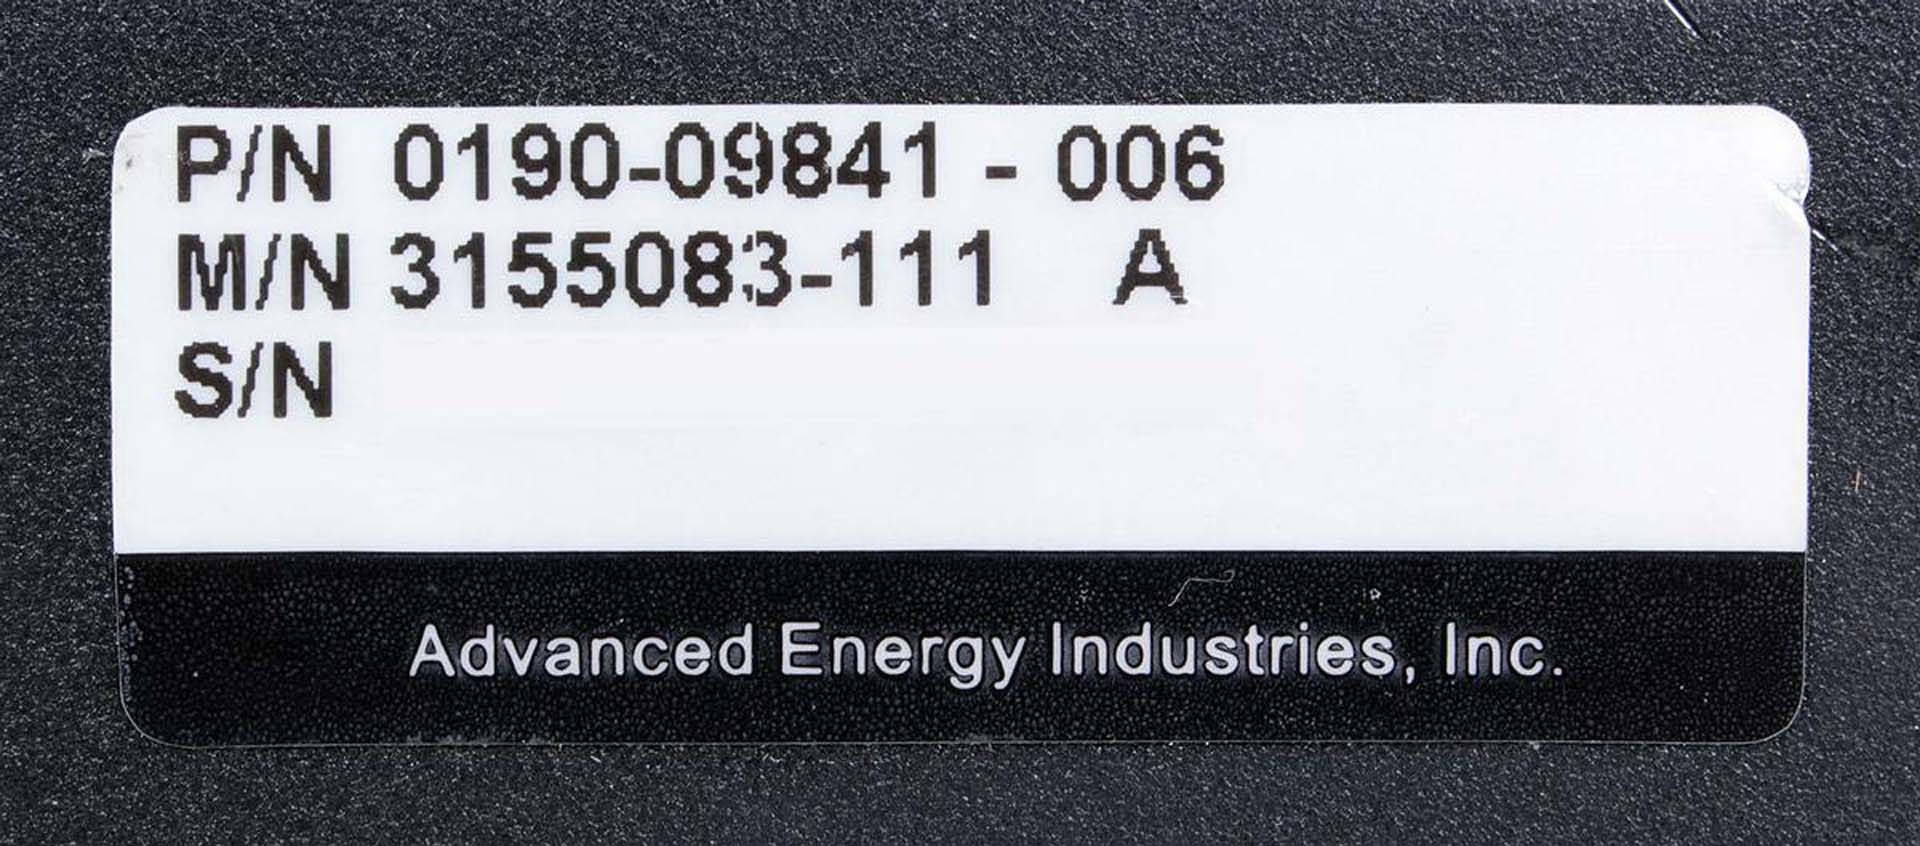 图为 已使用的 ADVANCED ENERGY HFV 8000 待售